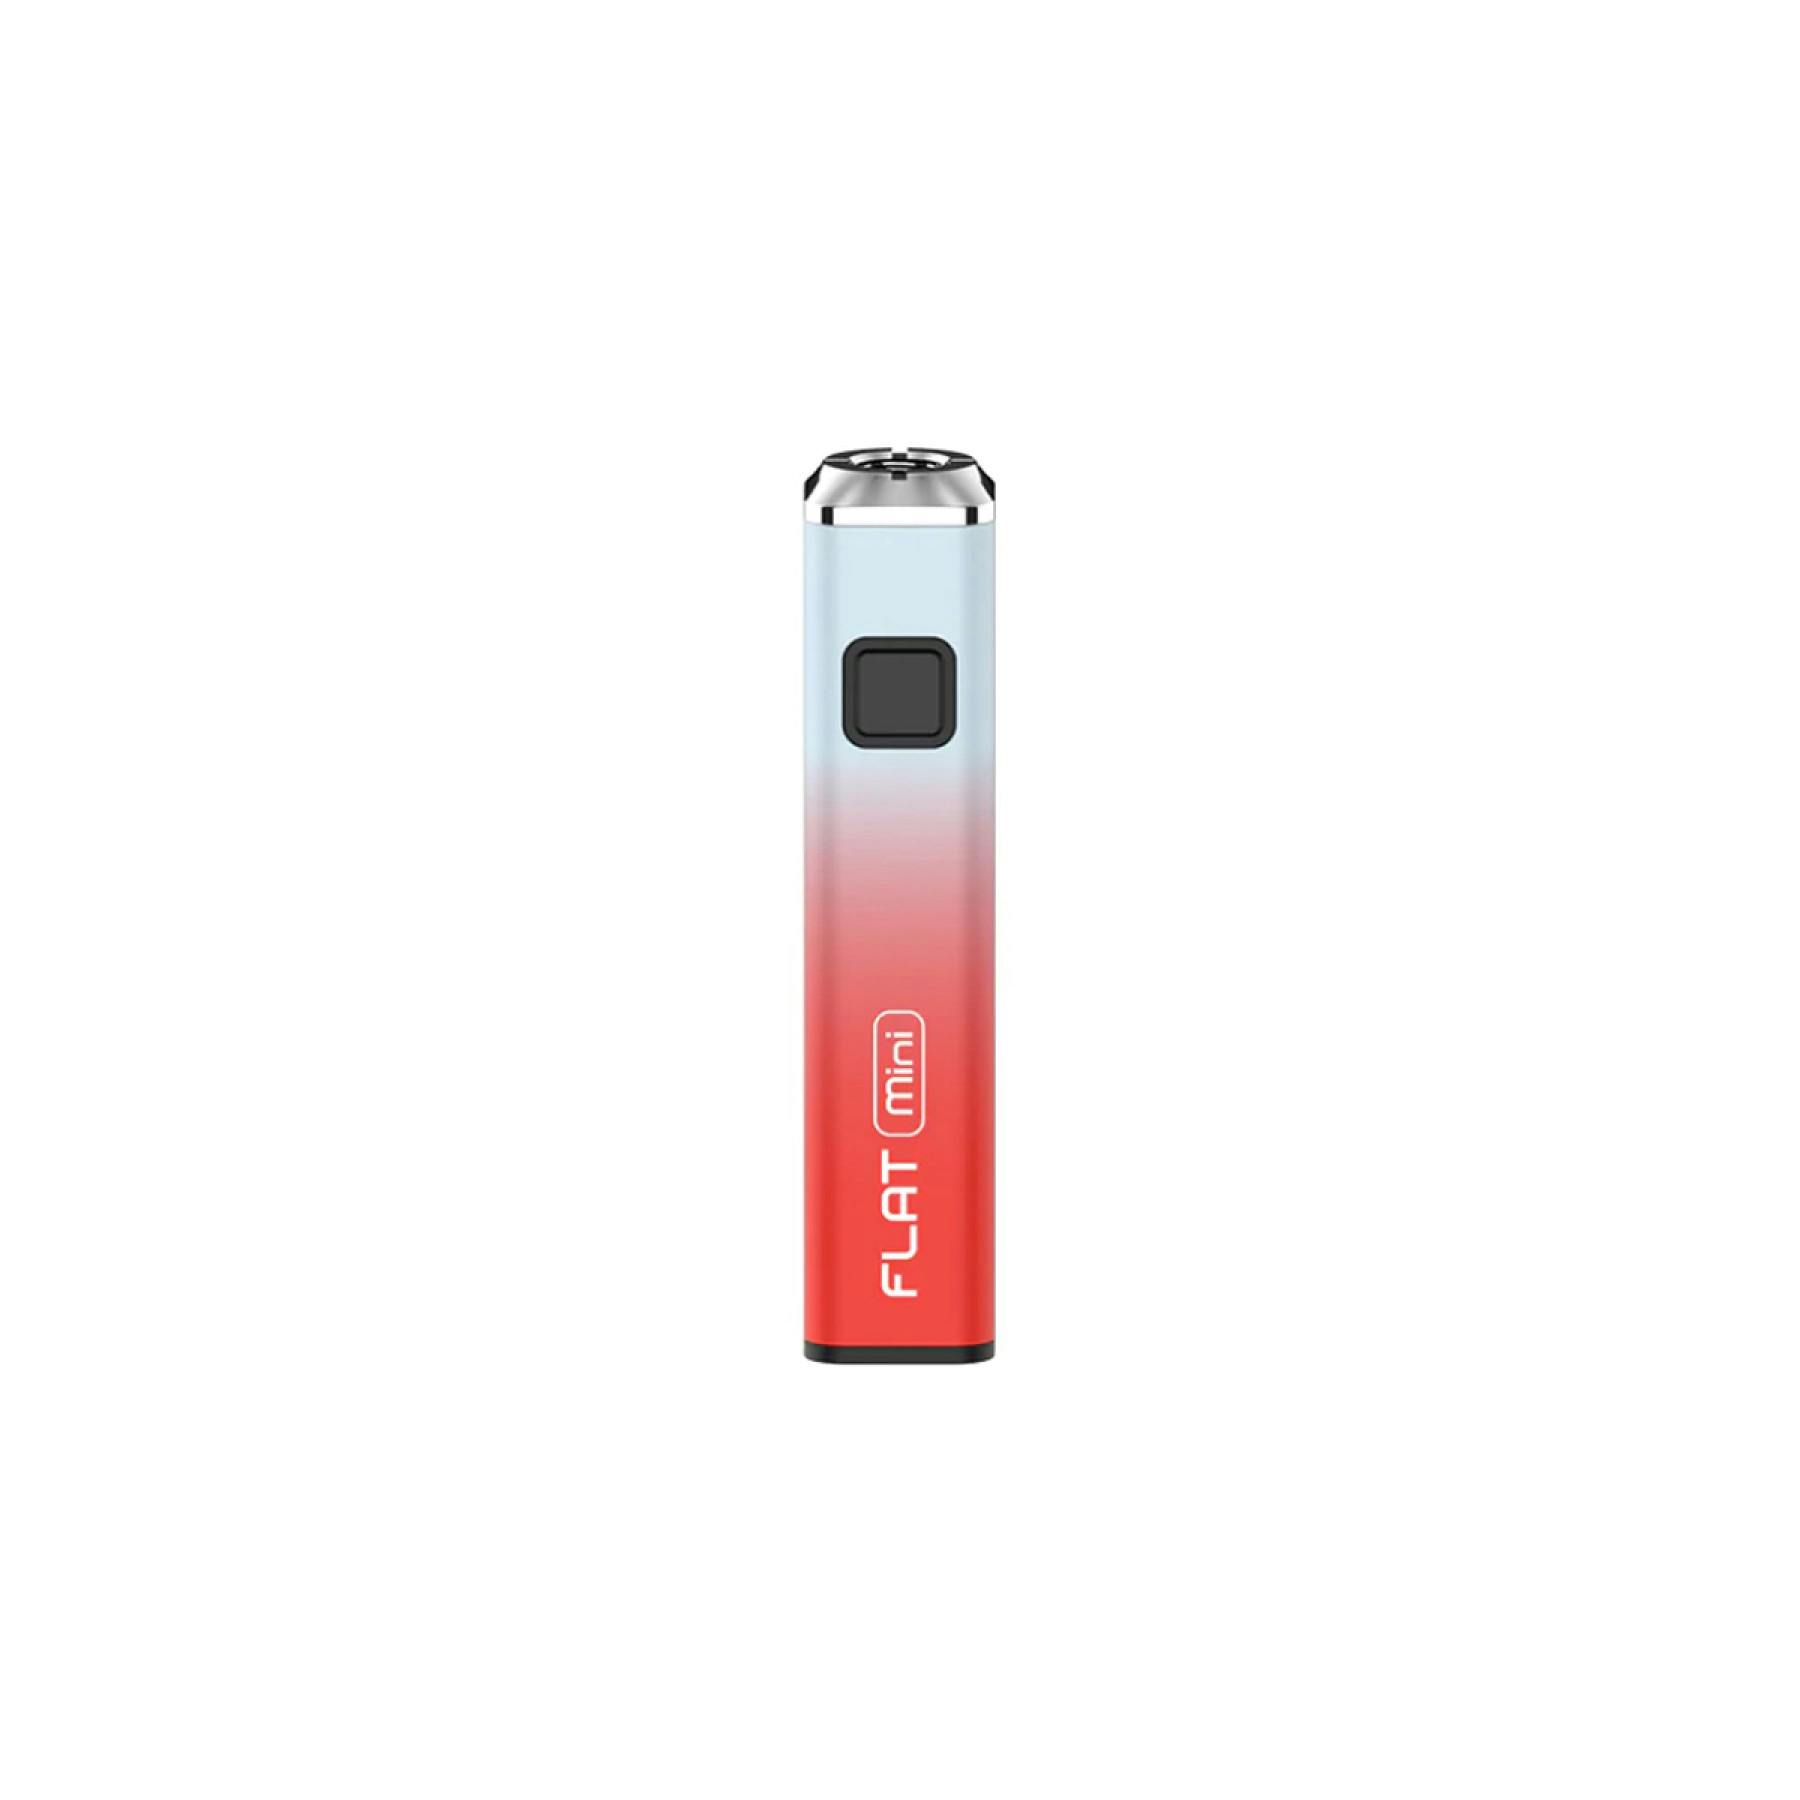 Flat Mini 510 Vape Battery | Red & Teal